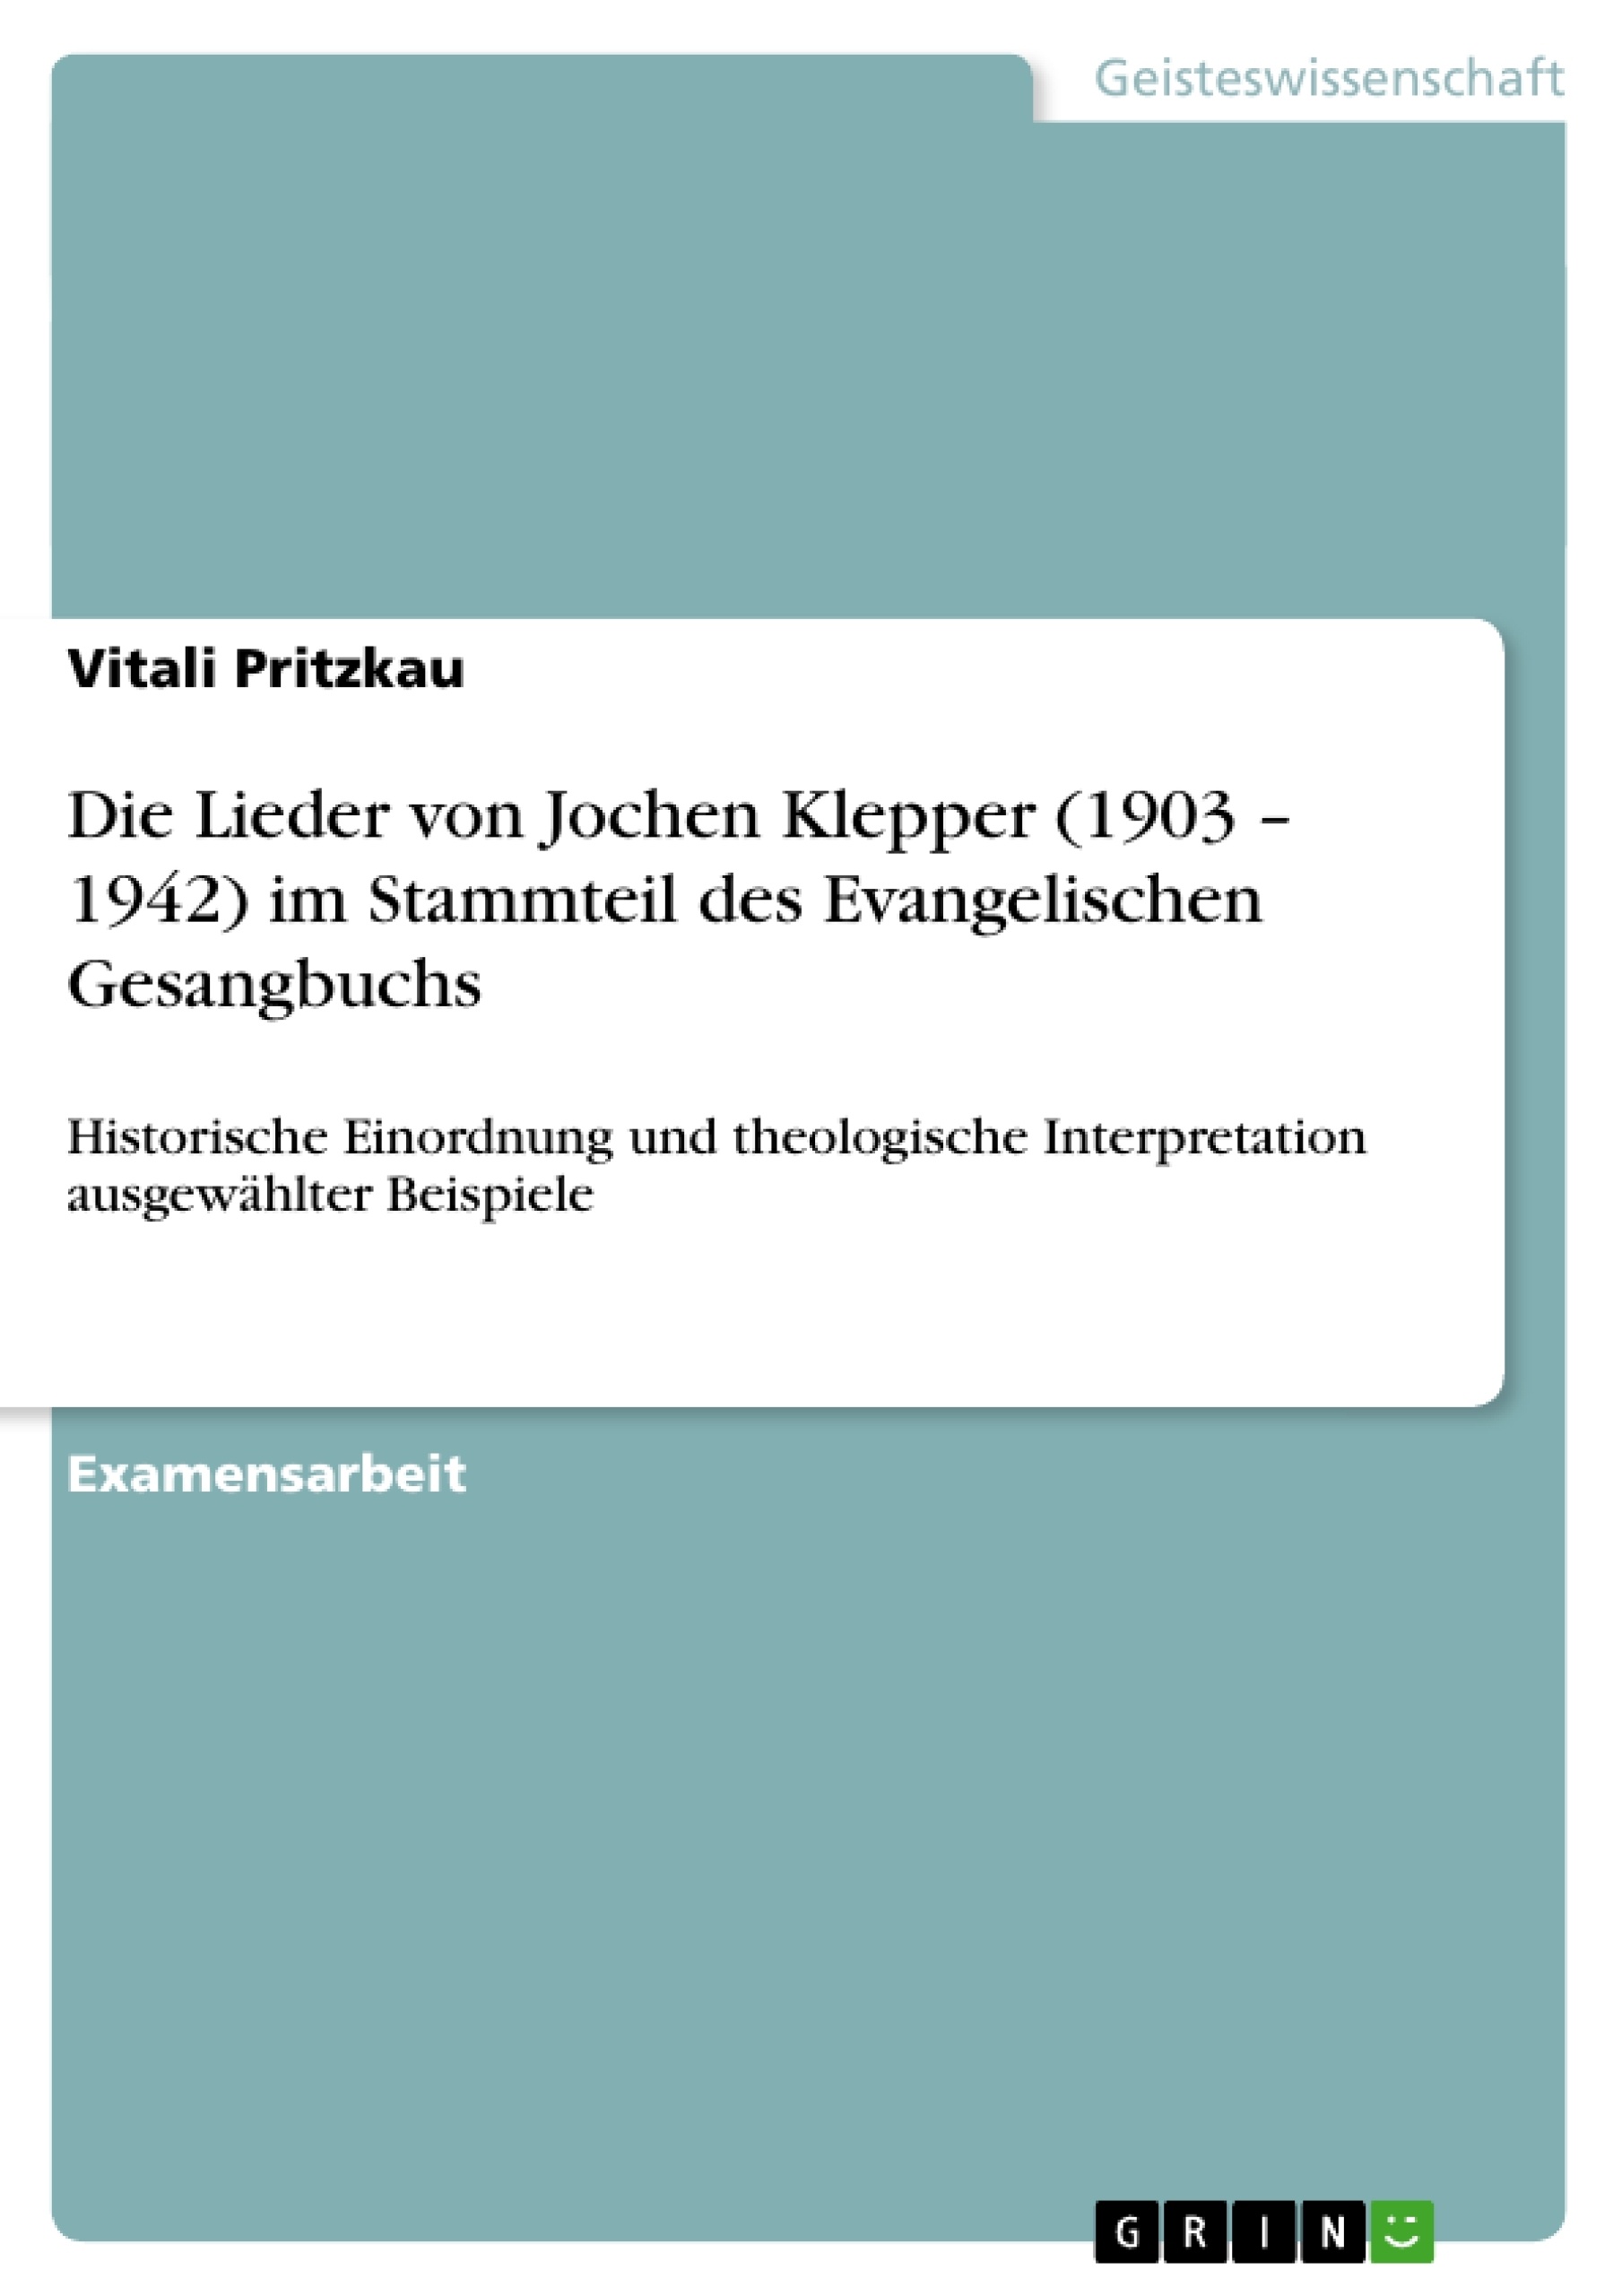 Título: Die Lieder von  Jochen Klepper (1903 – 1942)  im Stammteil des Evangelischen Gesangbuchs